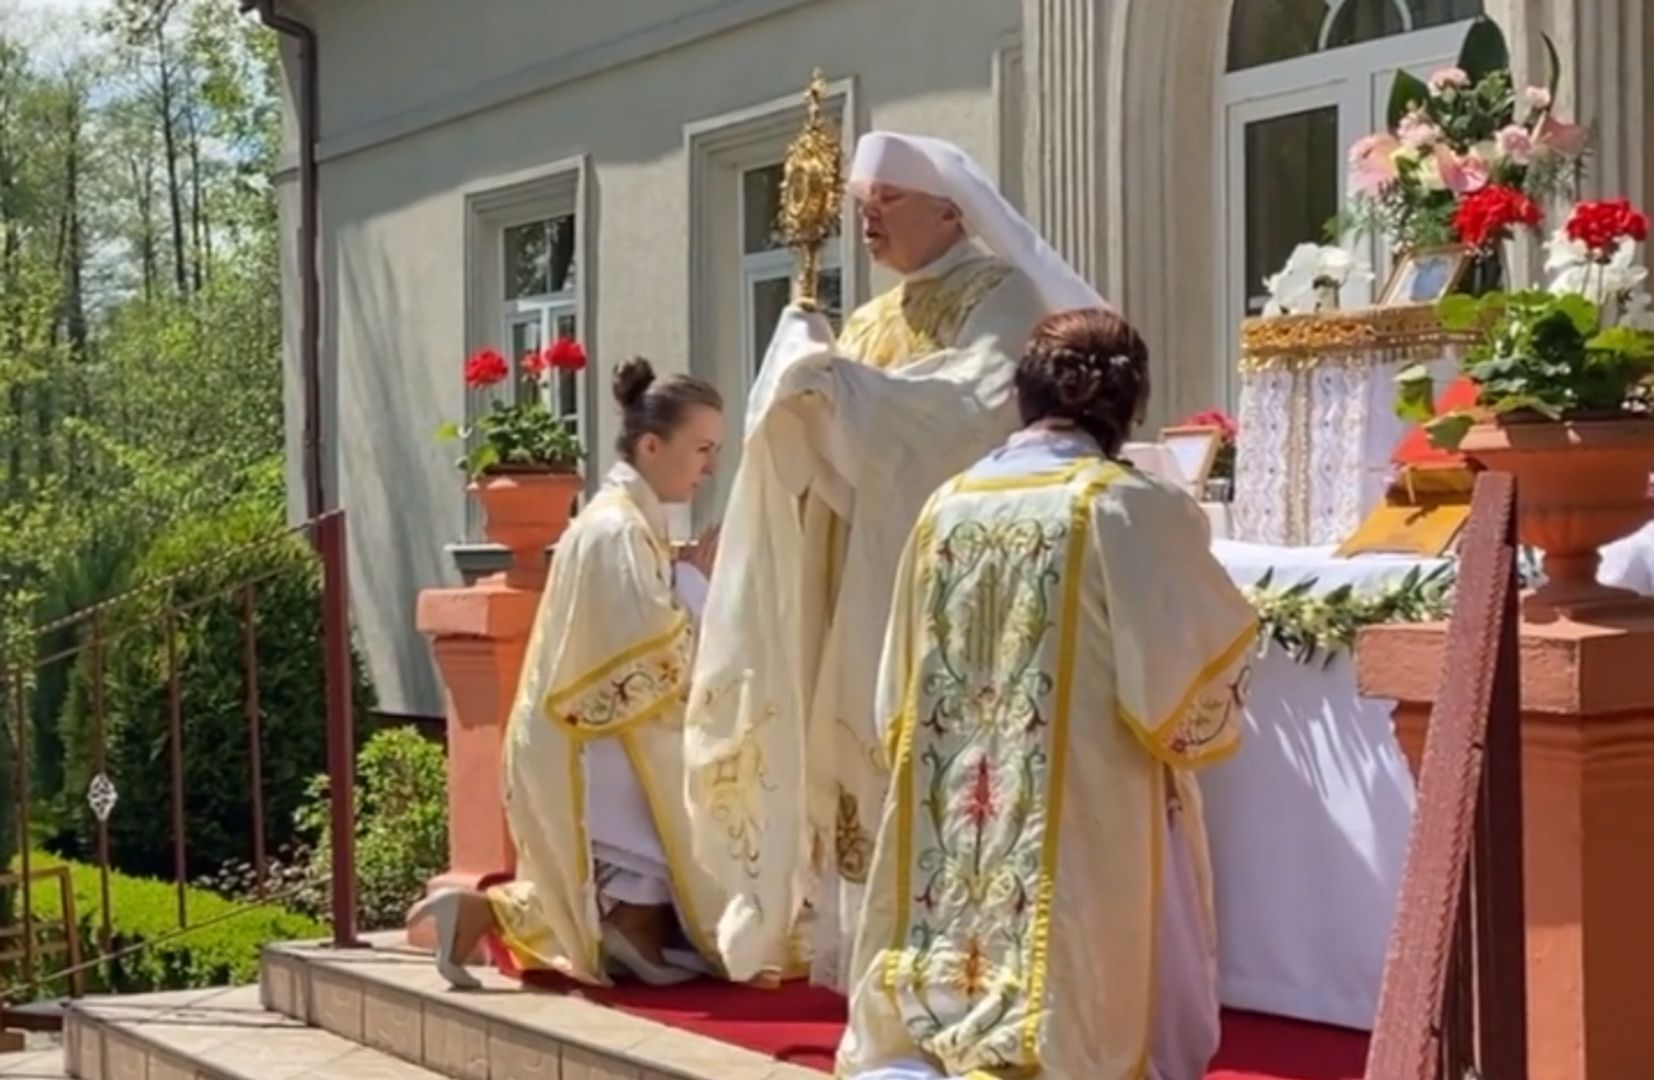 Kobiety-księża odprawiły mszę na Mazowszu. Poprowadziła ją siostra biskupka